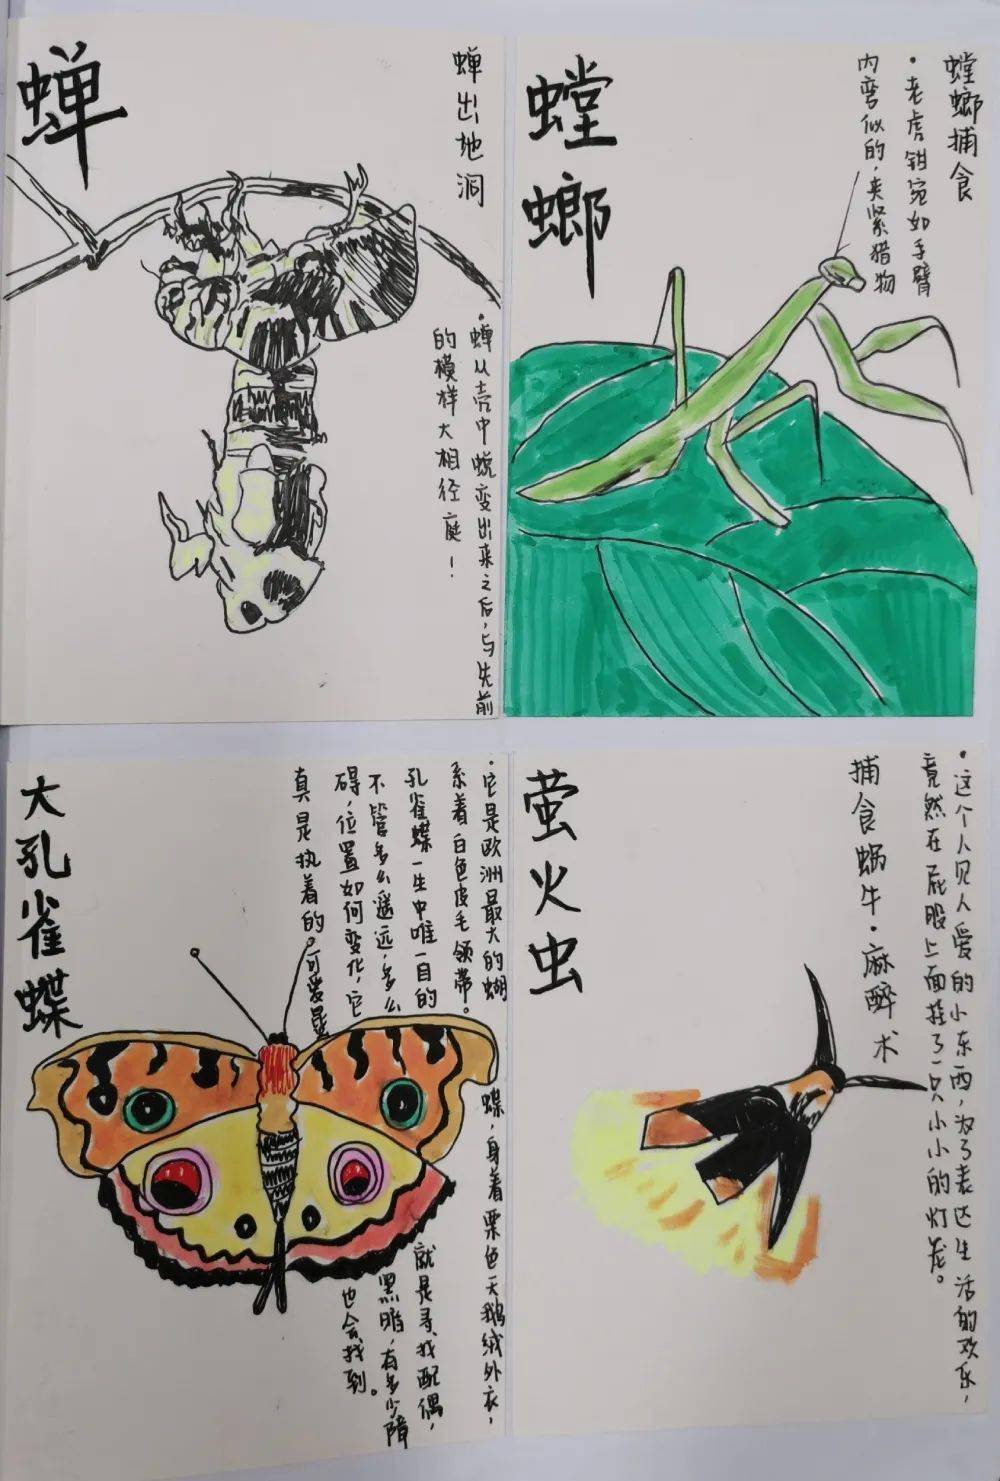 《昆虫记,并挑选你最感兴趣的昆虫至少十个,为他们制作"昆虫卡片集"